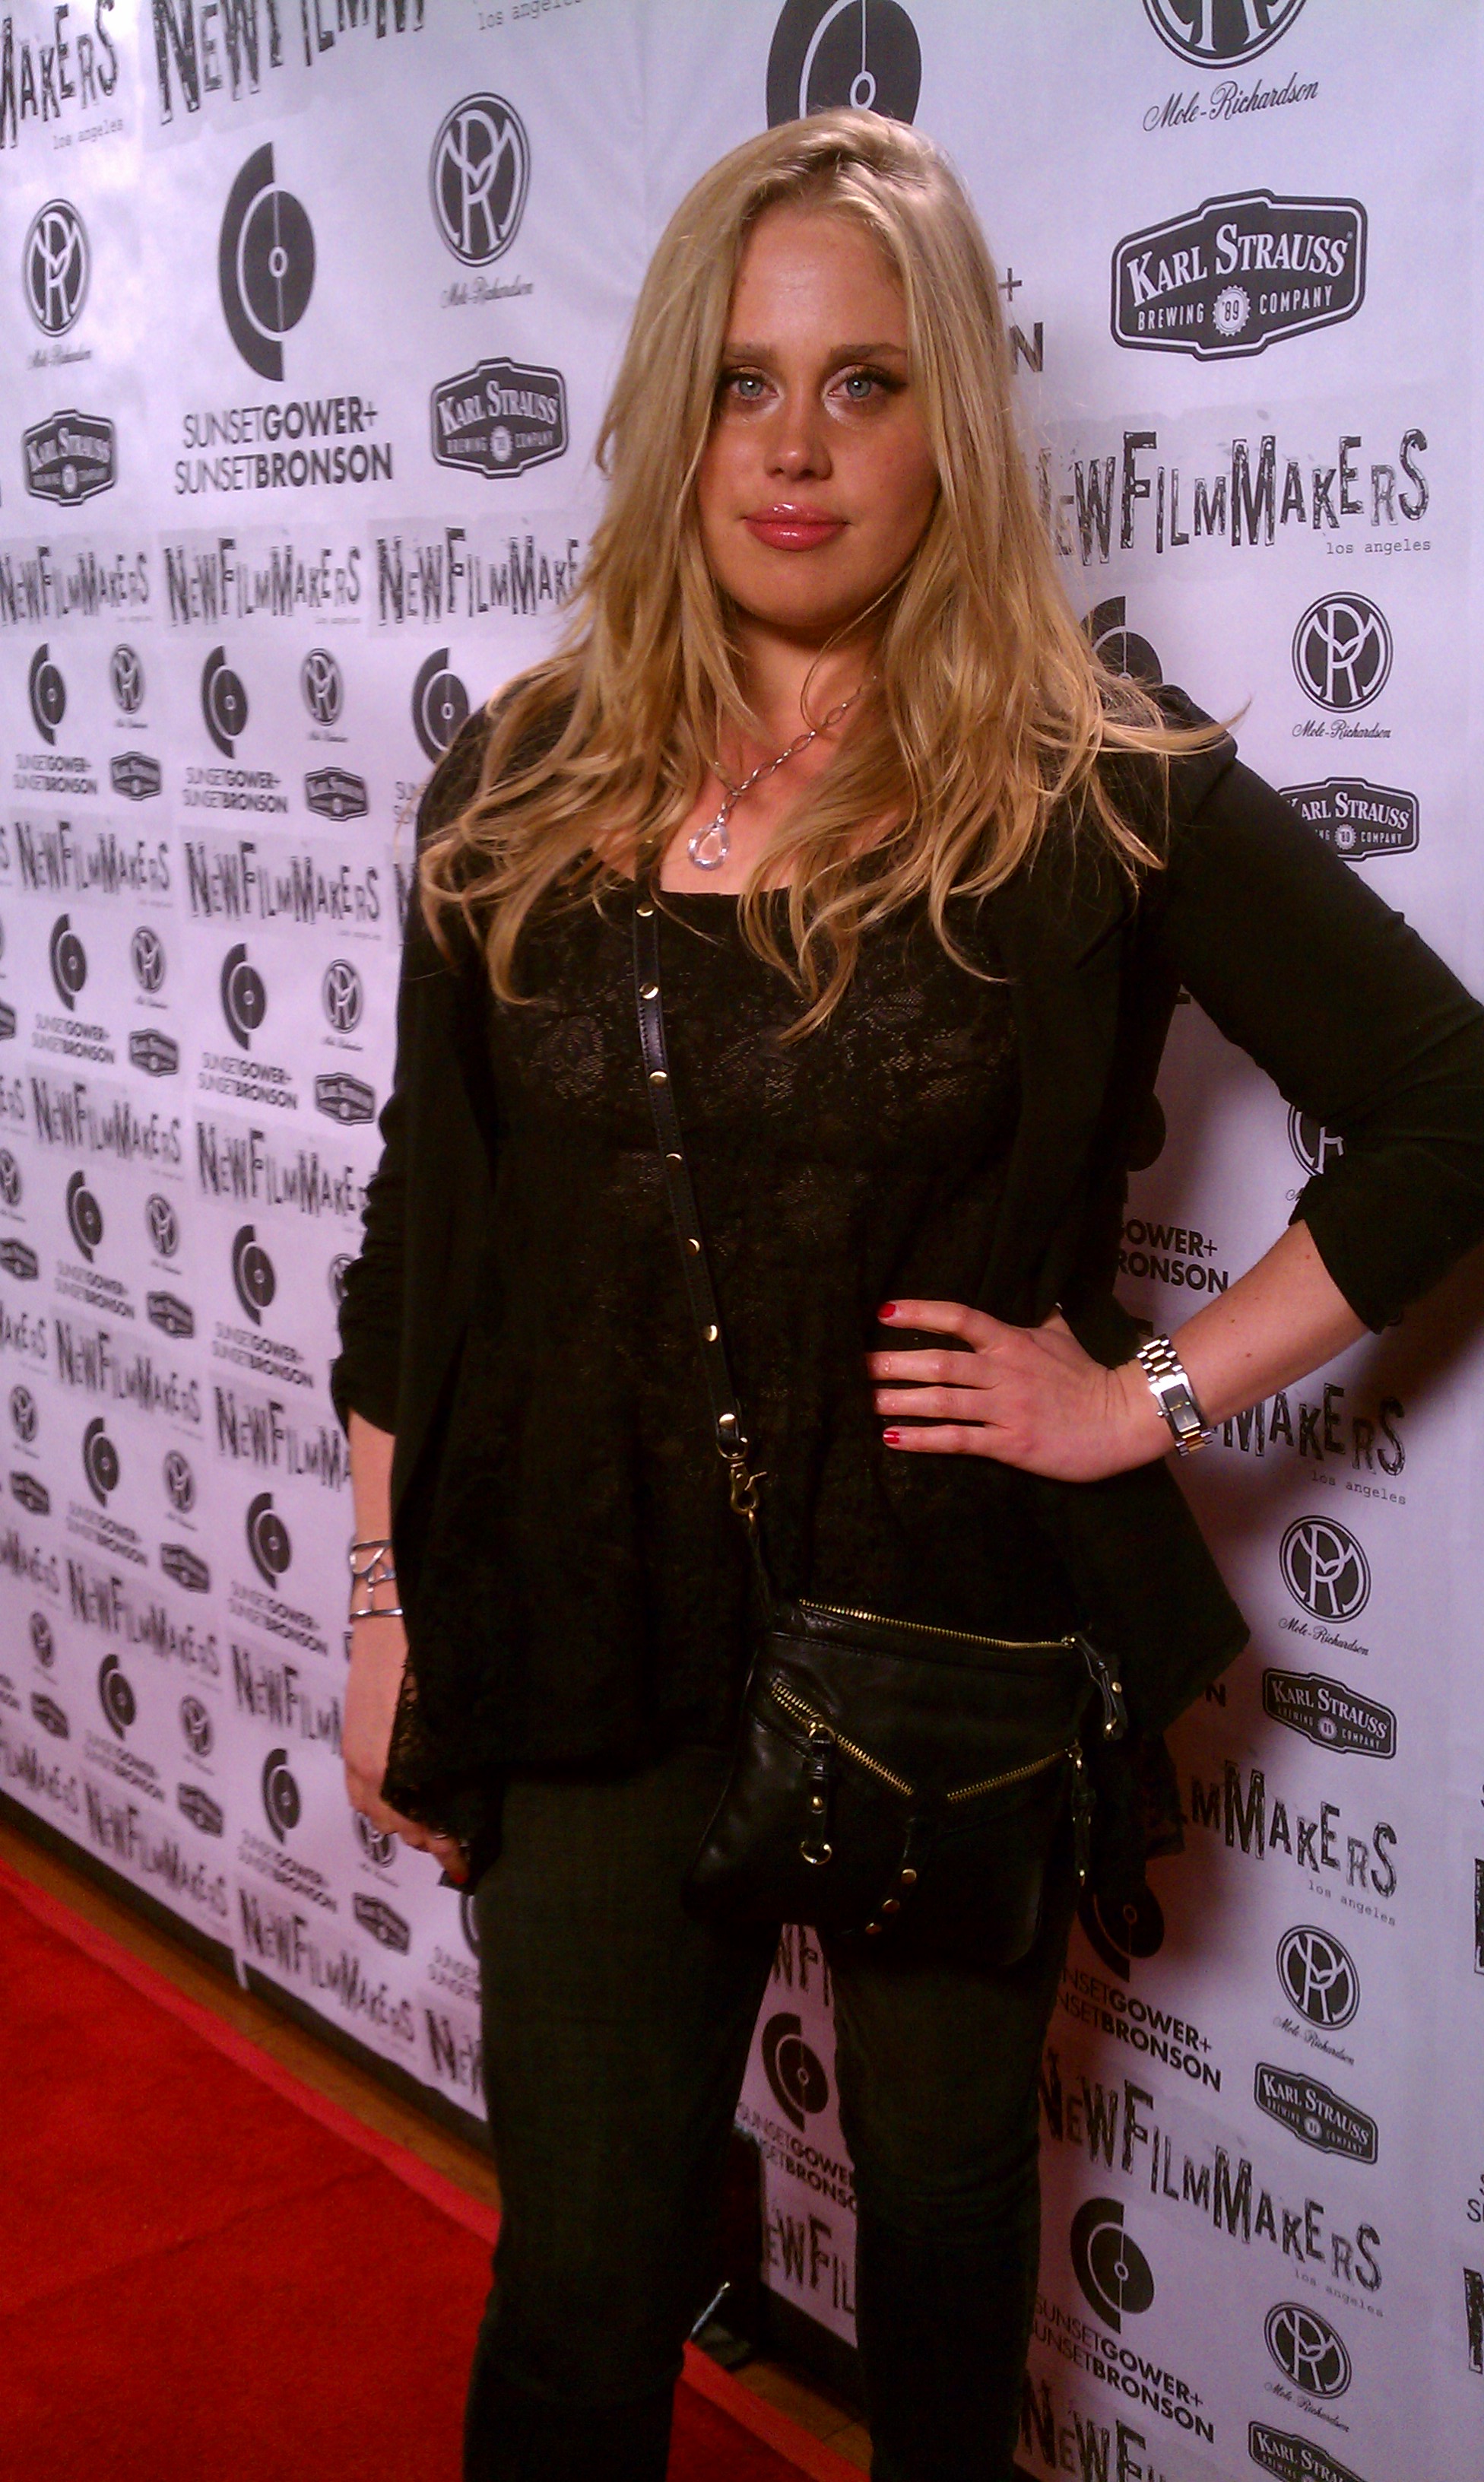 Jennifer Hartnett at New Film Makers LA 2012